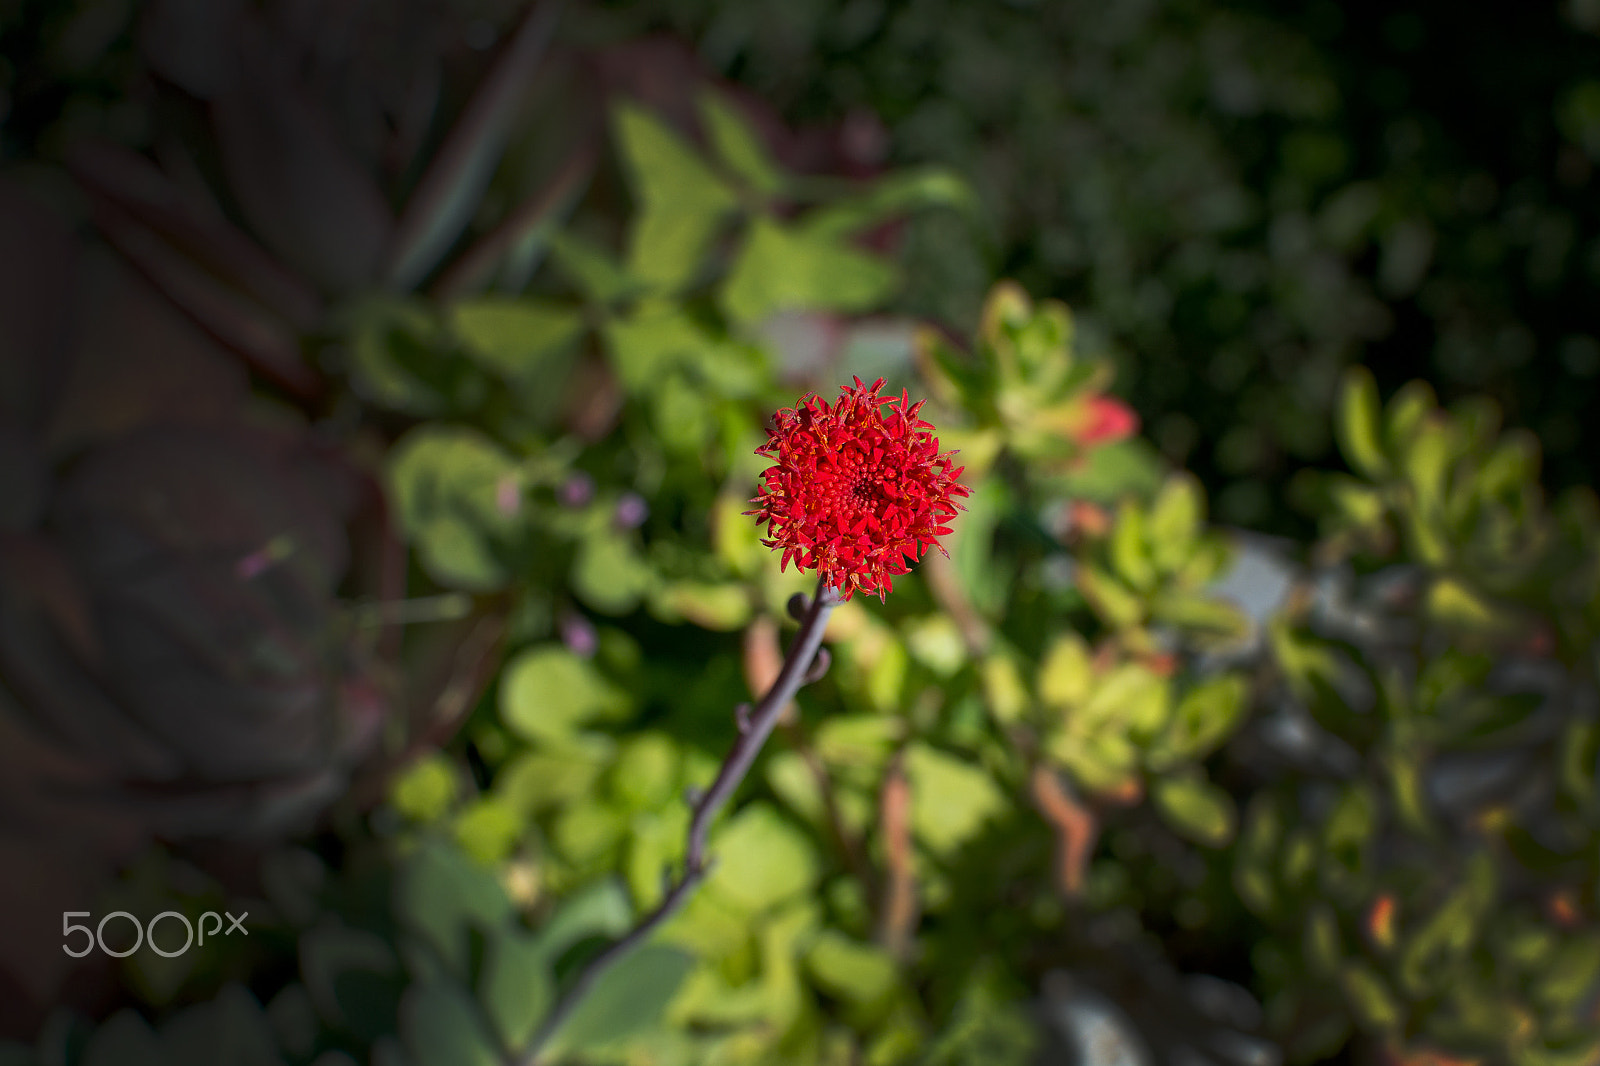 AF Zoom-Nikkor 35-105mm f/3.5-4.5 sample photo. Focus on red succulent flower photography